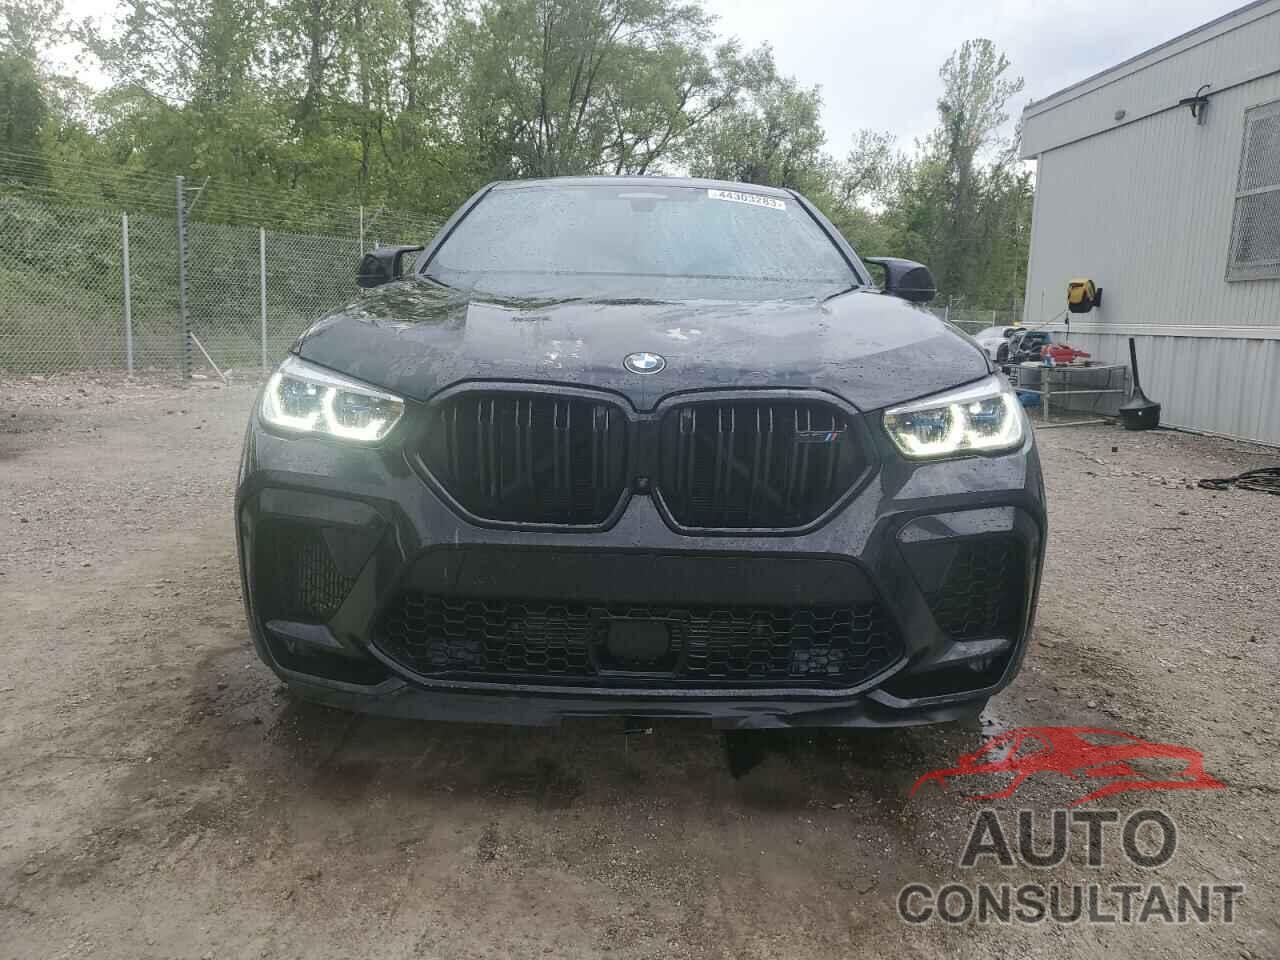 BMW X6 2021 - 5YMCY0C04M9G38152